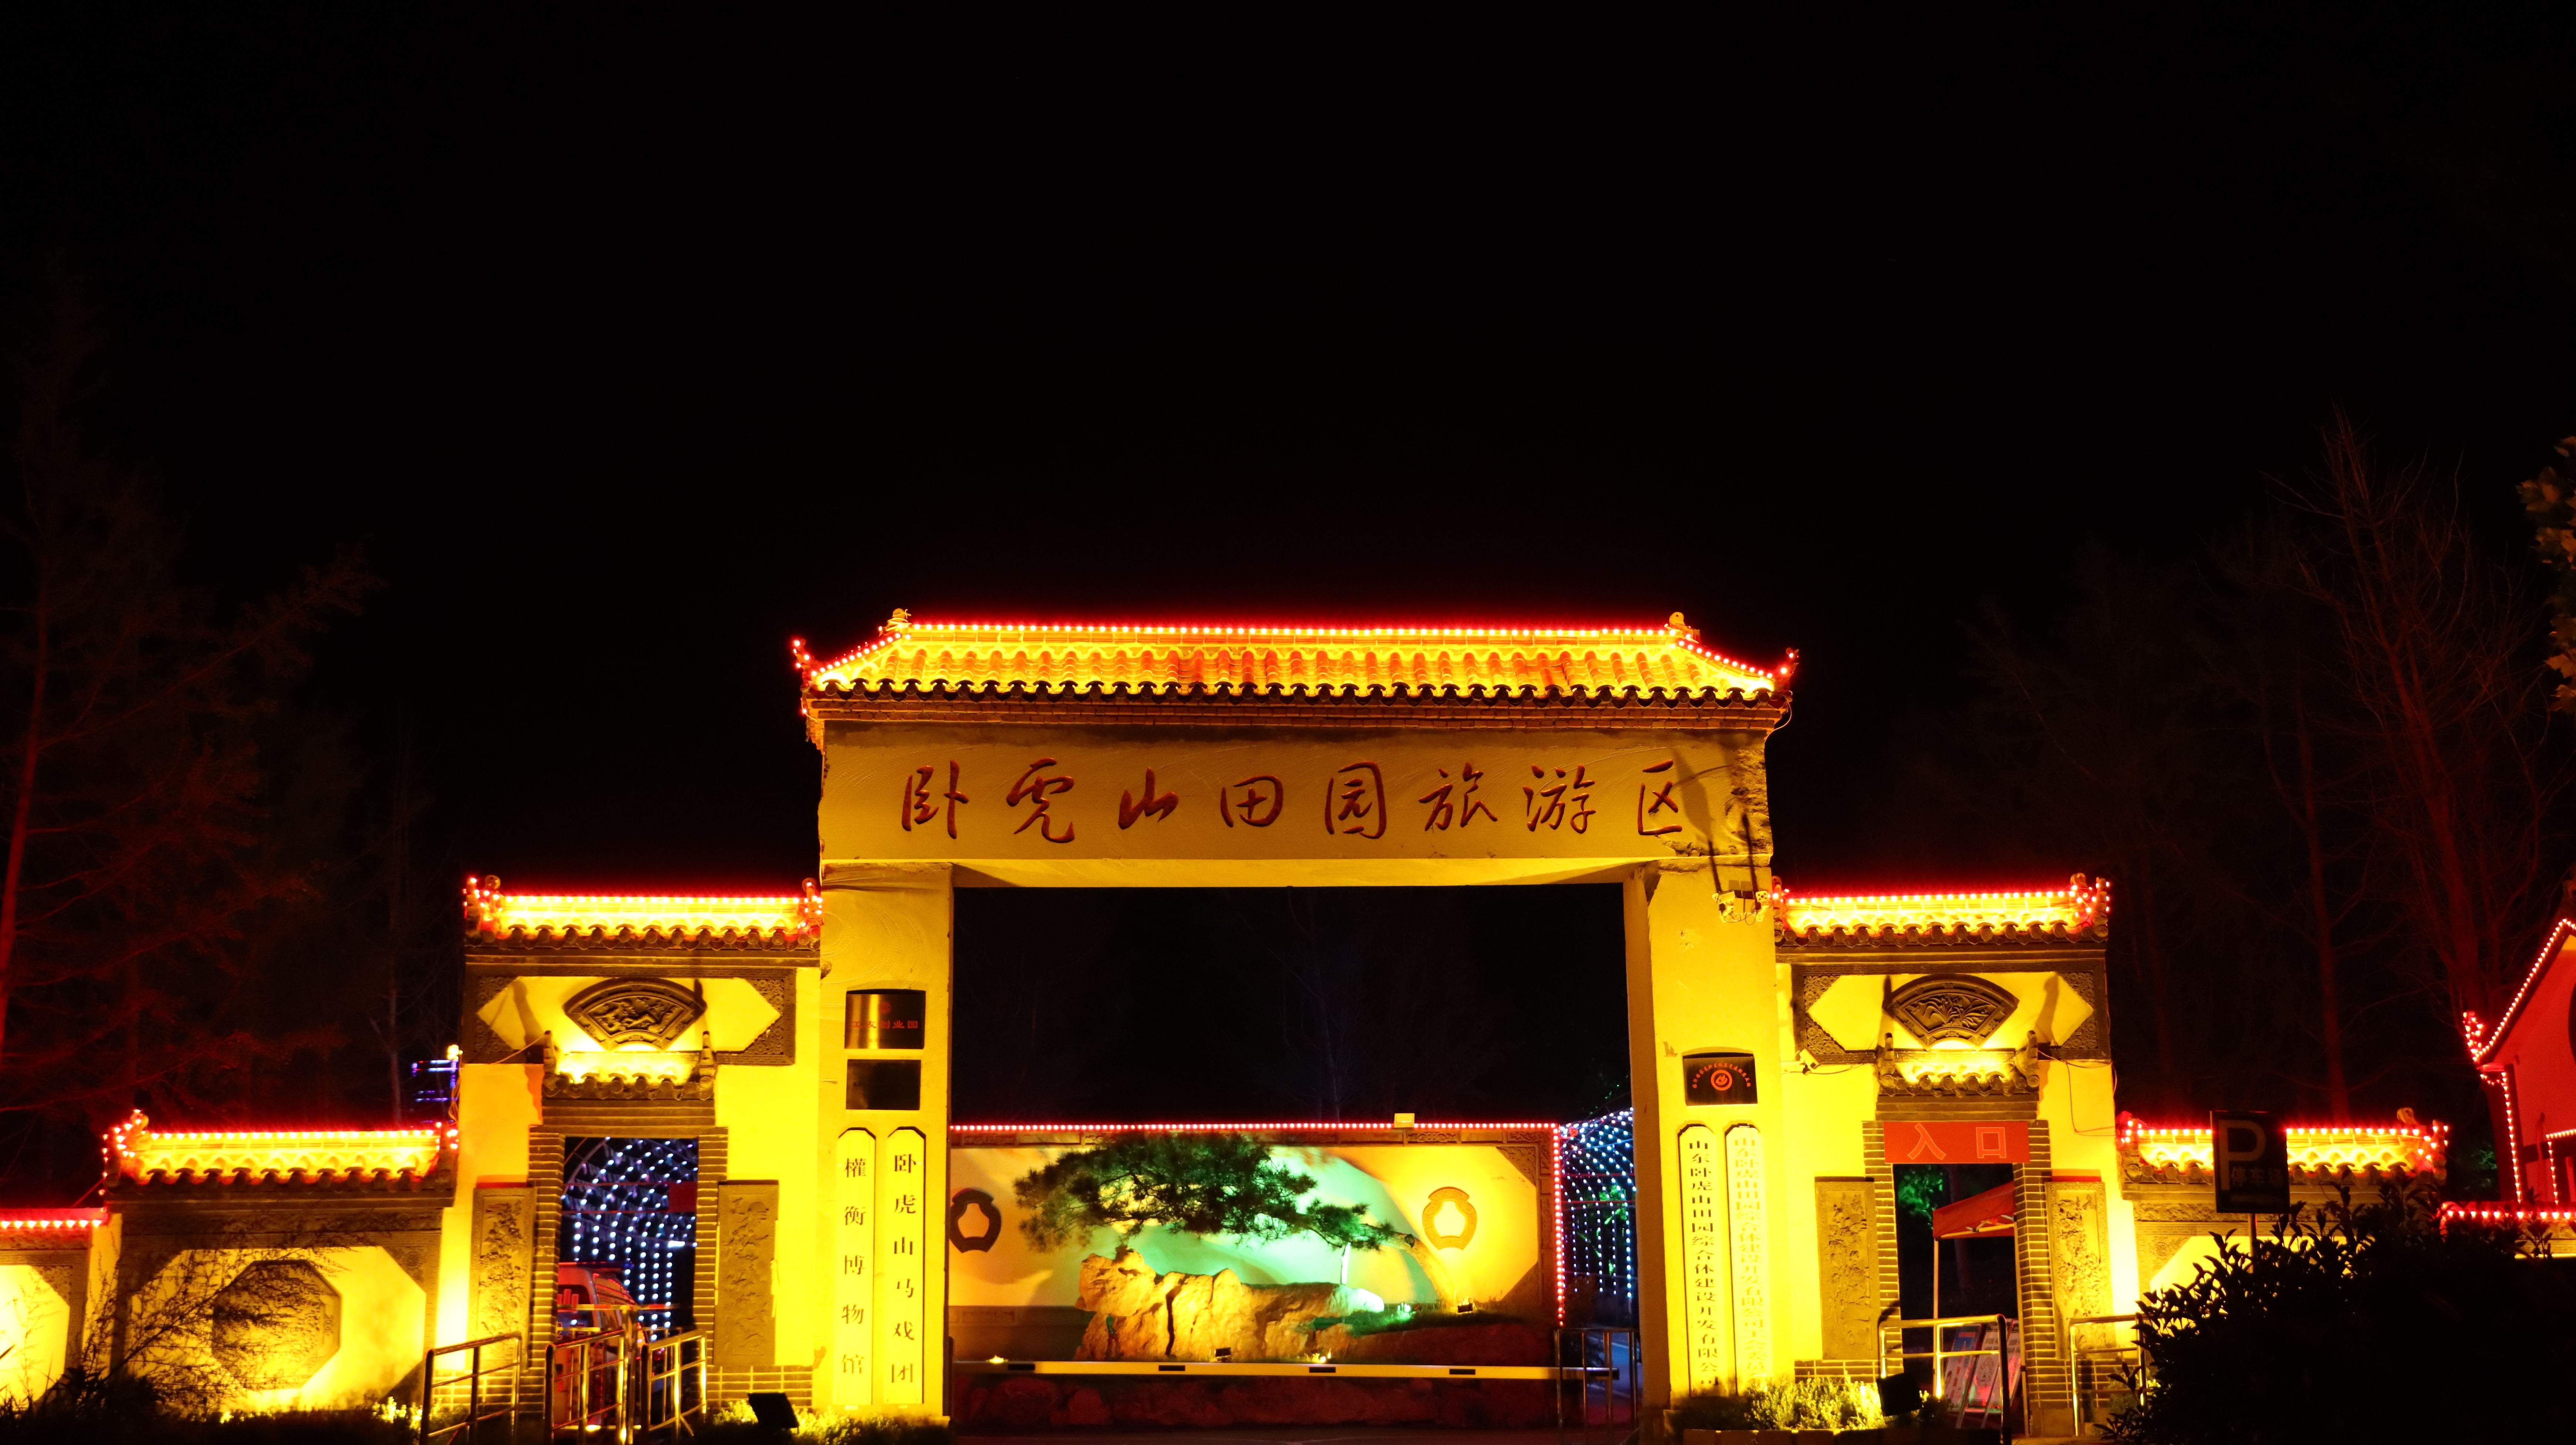 一个你不知道的好景区晚间也可游玩就在临沂马厂湖镇